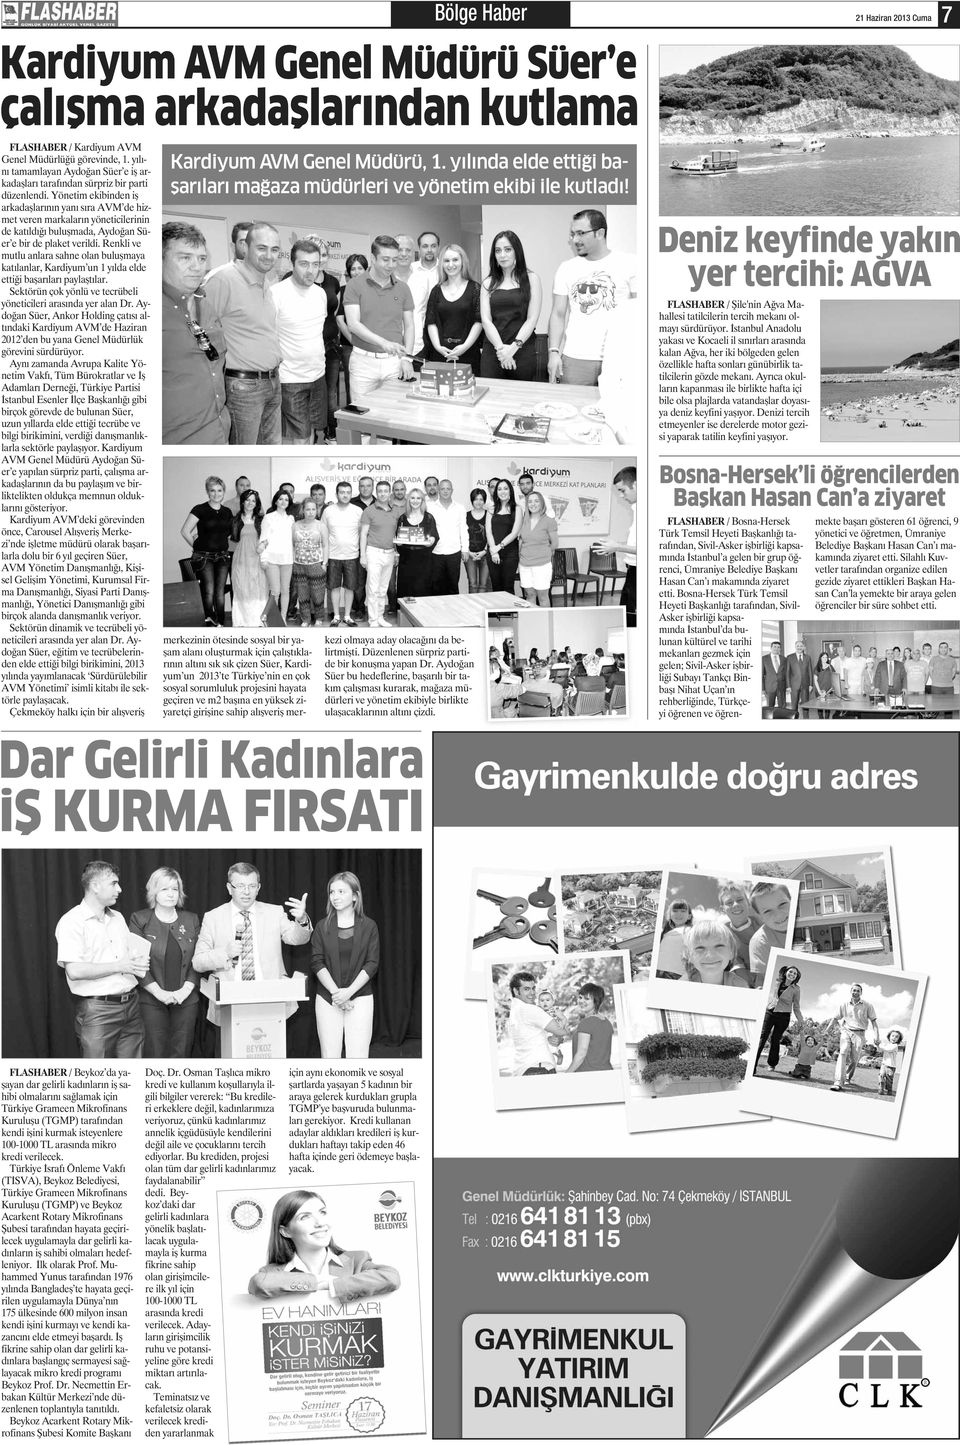 Yönetim ekibinden iş arkadaşlarının yanı sıra AVM de hizmet veren markaların yöneticilerinin de katıldığı buluşmada, Aydoğan Süer e bir de plaket verildi.